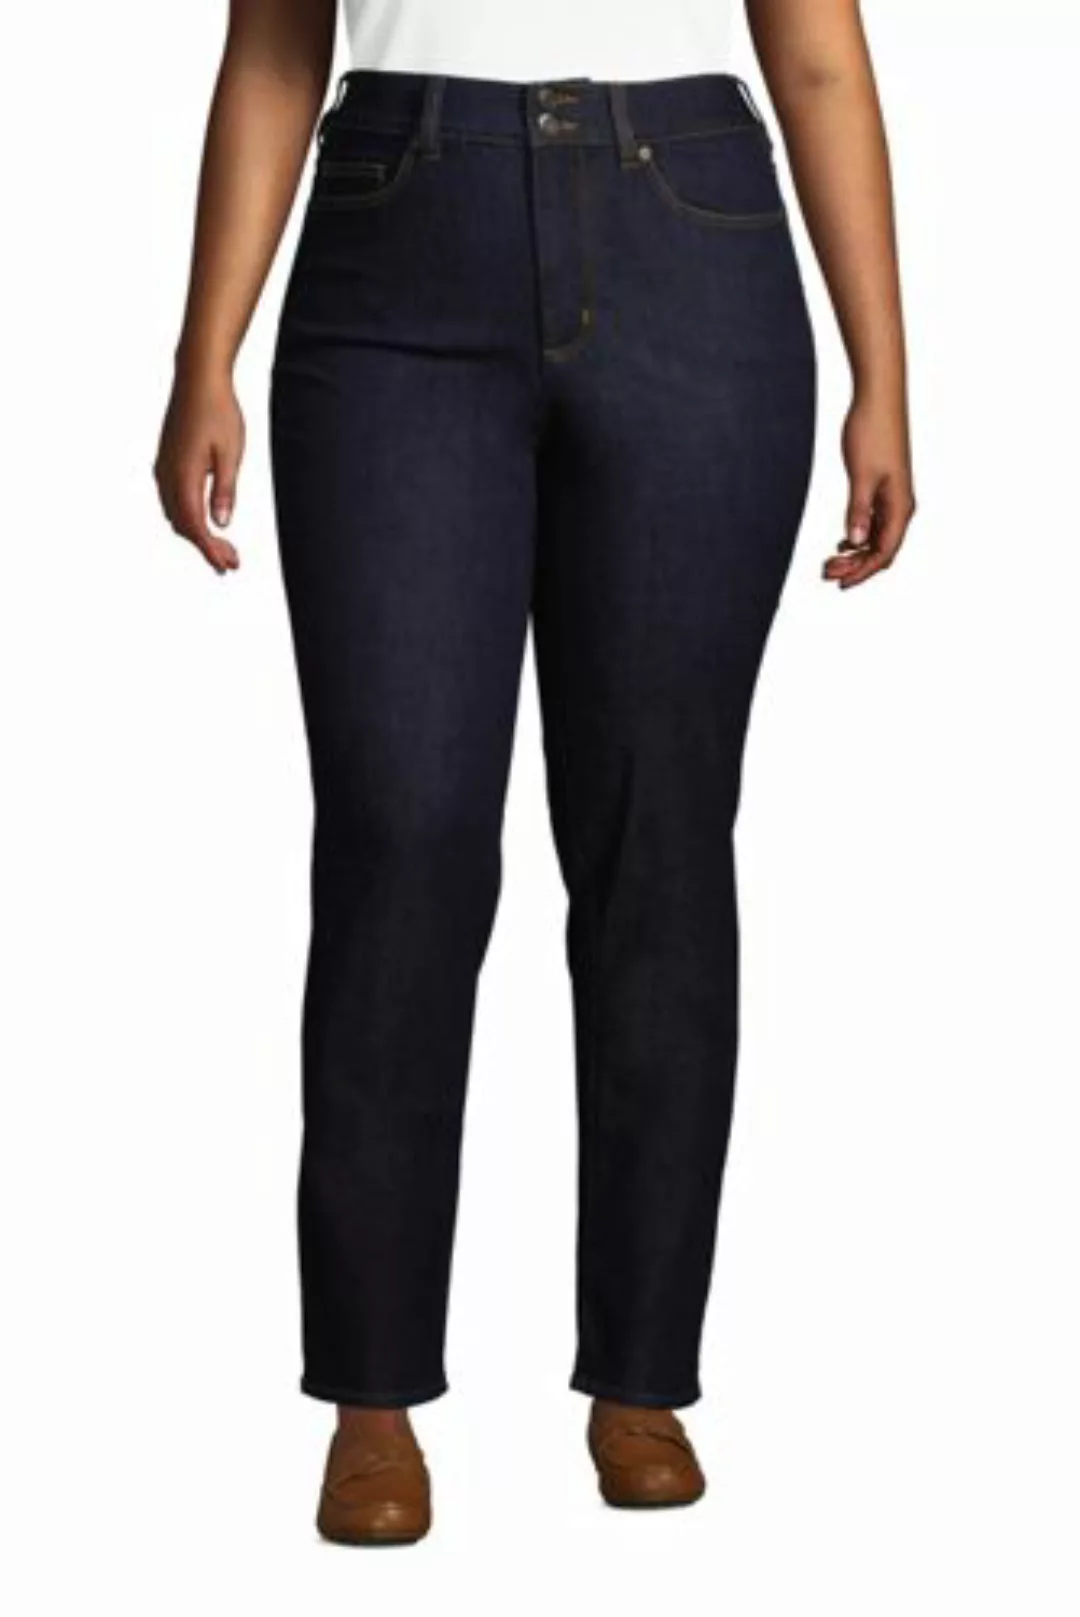 Shaping Jeans Straight Fit High Waist in großen Größen, Damen, Größe: 52 28 günstig online kaufen